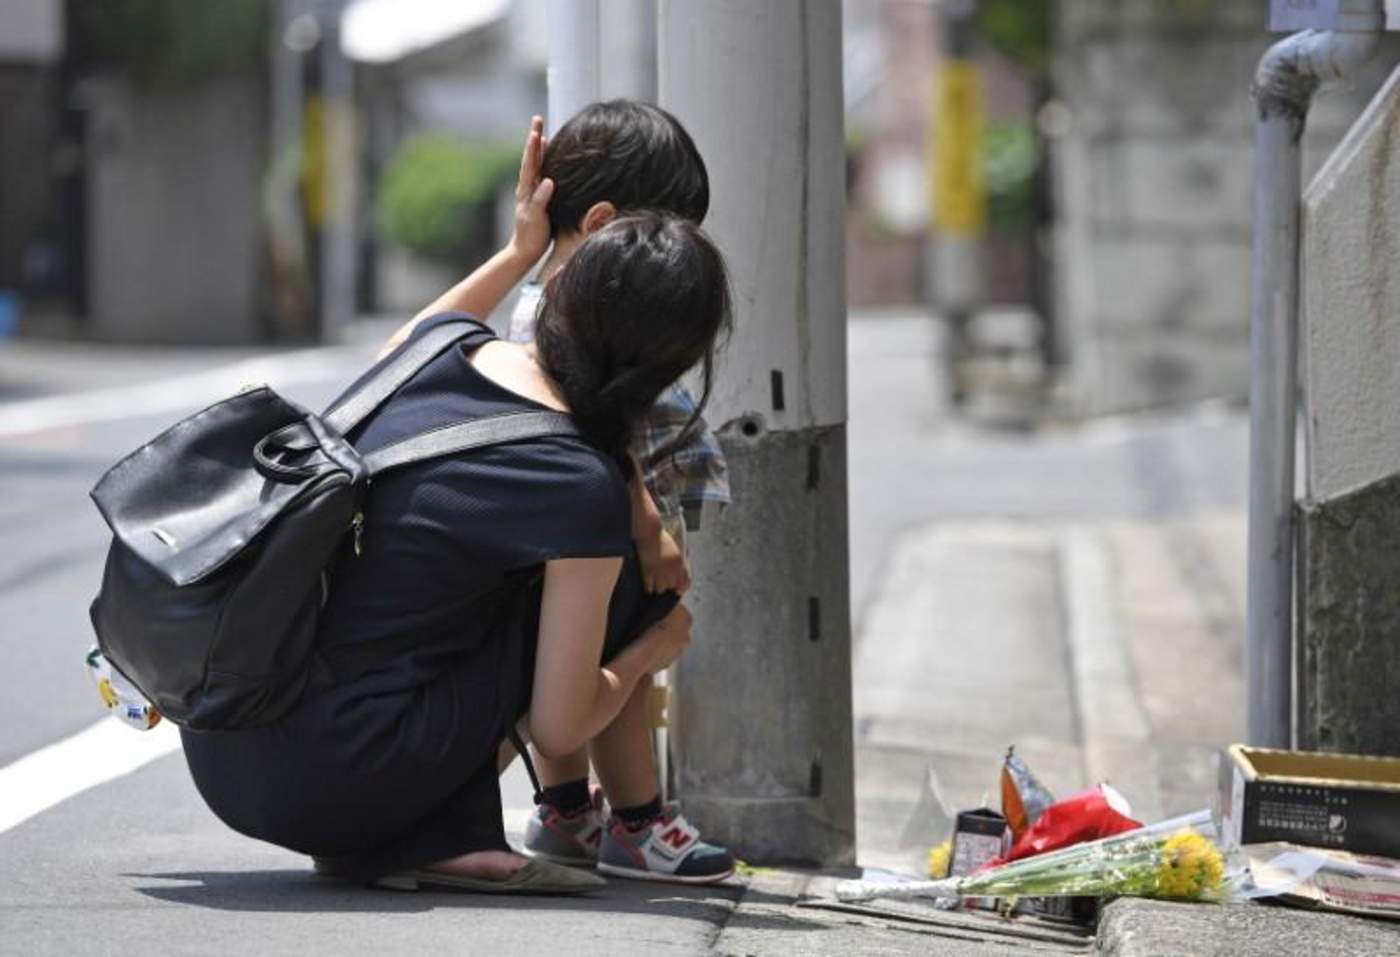 El Ejecutivo que lidera Shinzo Abe tiene previsto revisar la normativa vigente, que prohíbe el maltrato infantil aunque no estipula con claridad qué tipo de casos pueden considerarse como castigo corporal, señalaron fuentes gubernamentales a la agencia local Kyodo. (ARCHIVO)